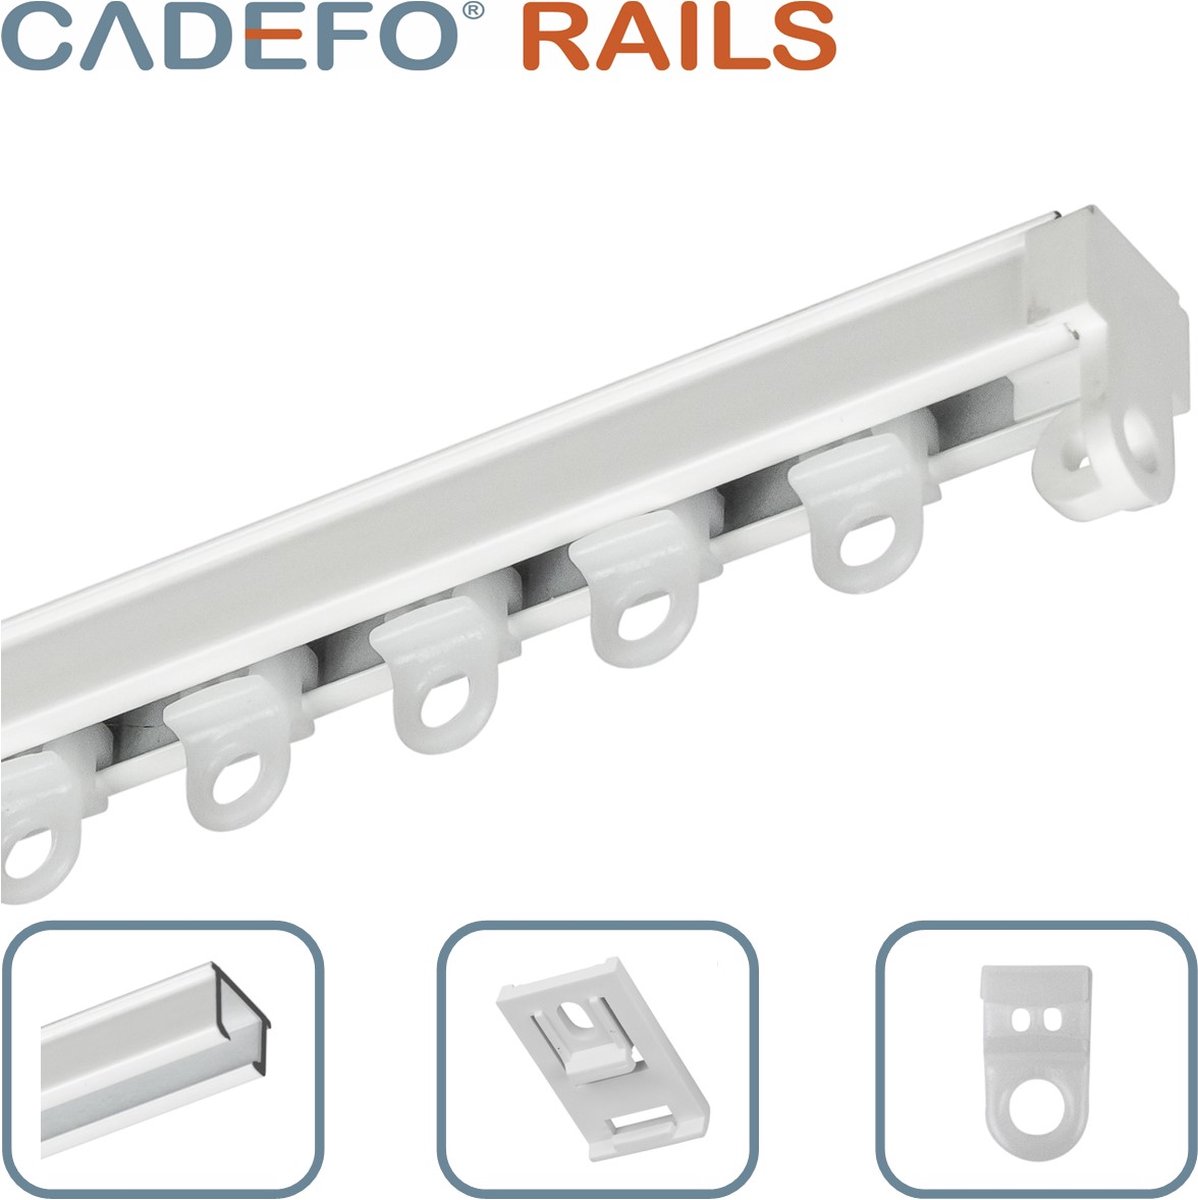 CADEFO RAILS (301 - 350 cm) Gordijnrails - Compleet op maat! - UIT 1 STUK - Leverbaar tot 6 meter - Plafondbevestiging - Lengte 311 cm